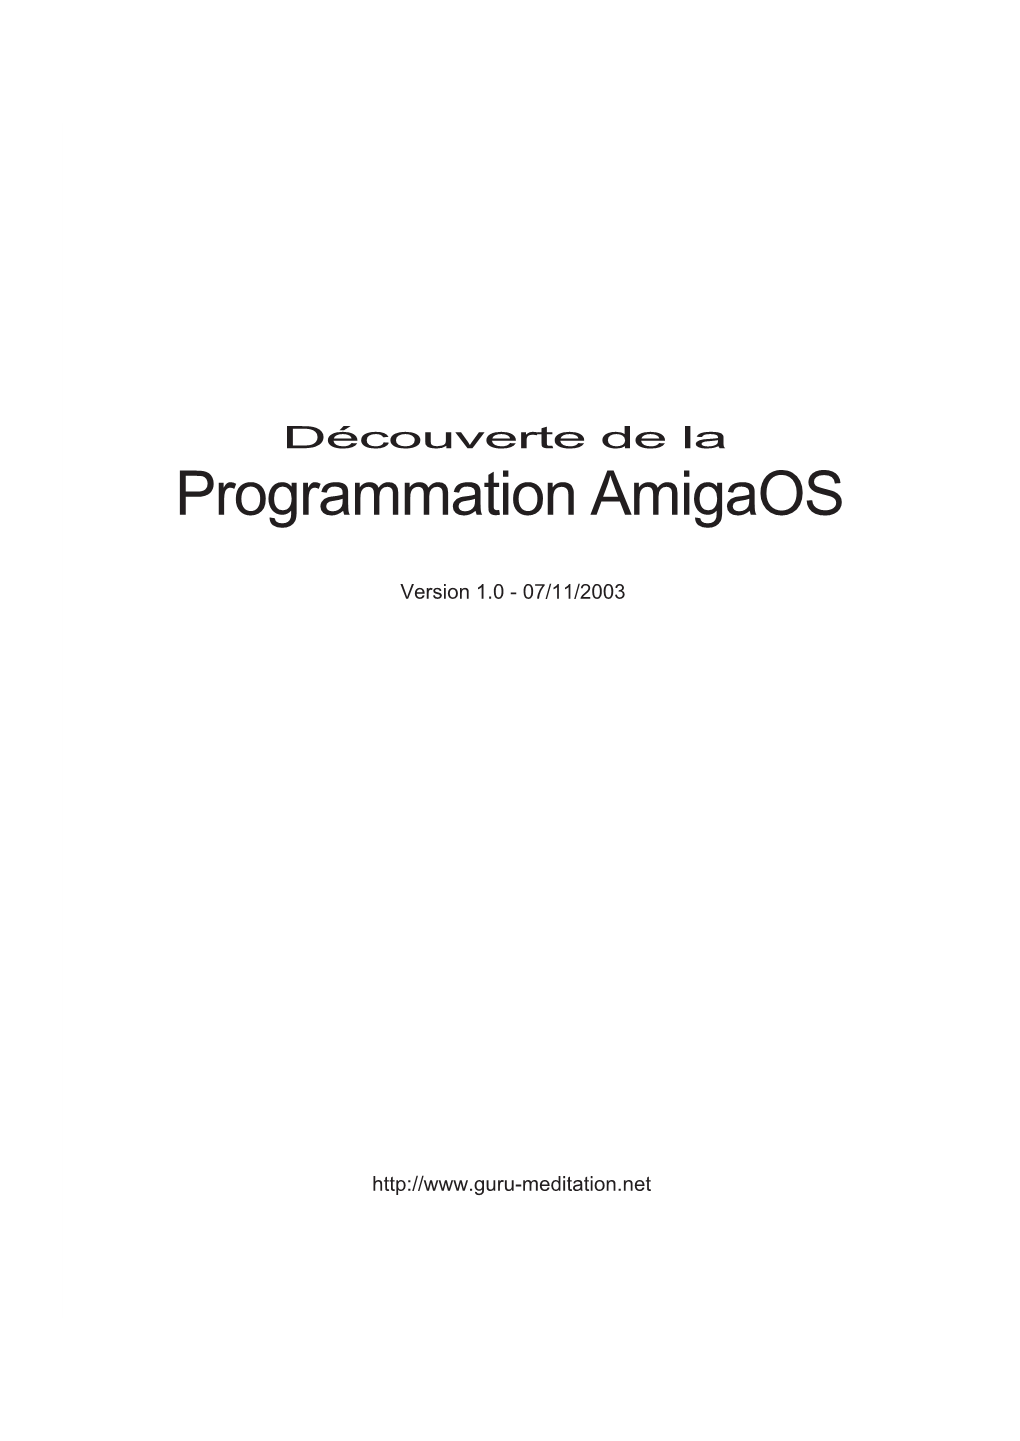 Programmation Amigaos